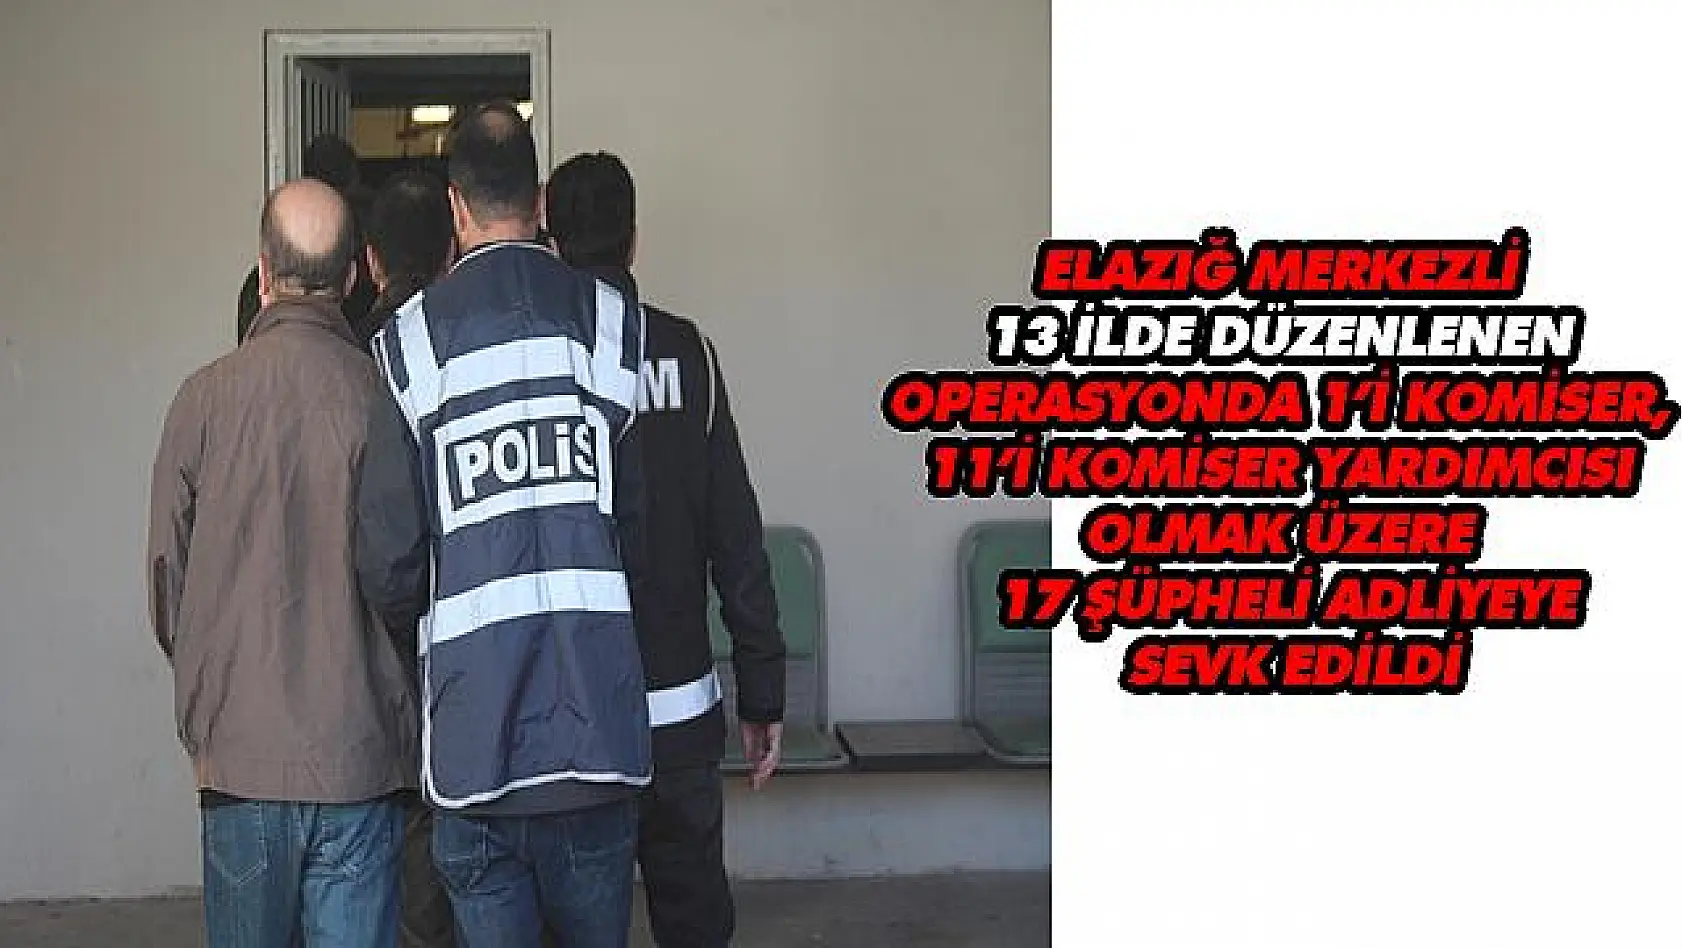 Elazığ'da FETÖ operasyonu: Komiser ve polis 17 şüpheli adliyeye sevk edildi  